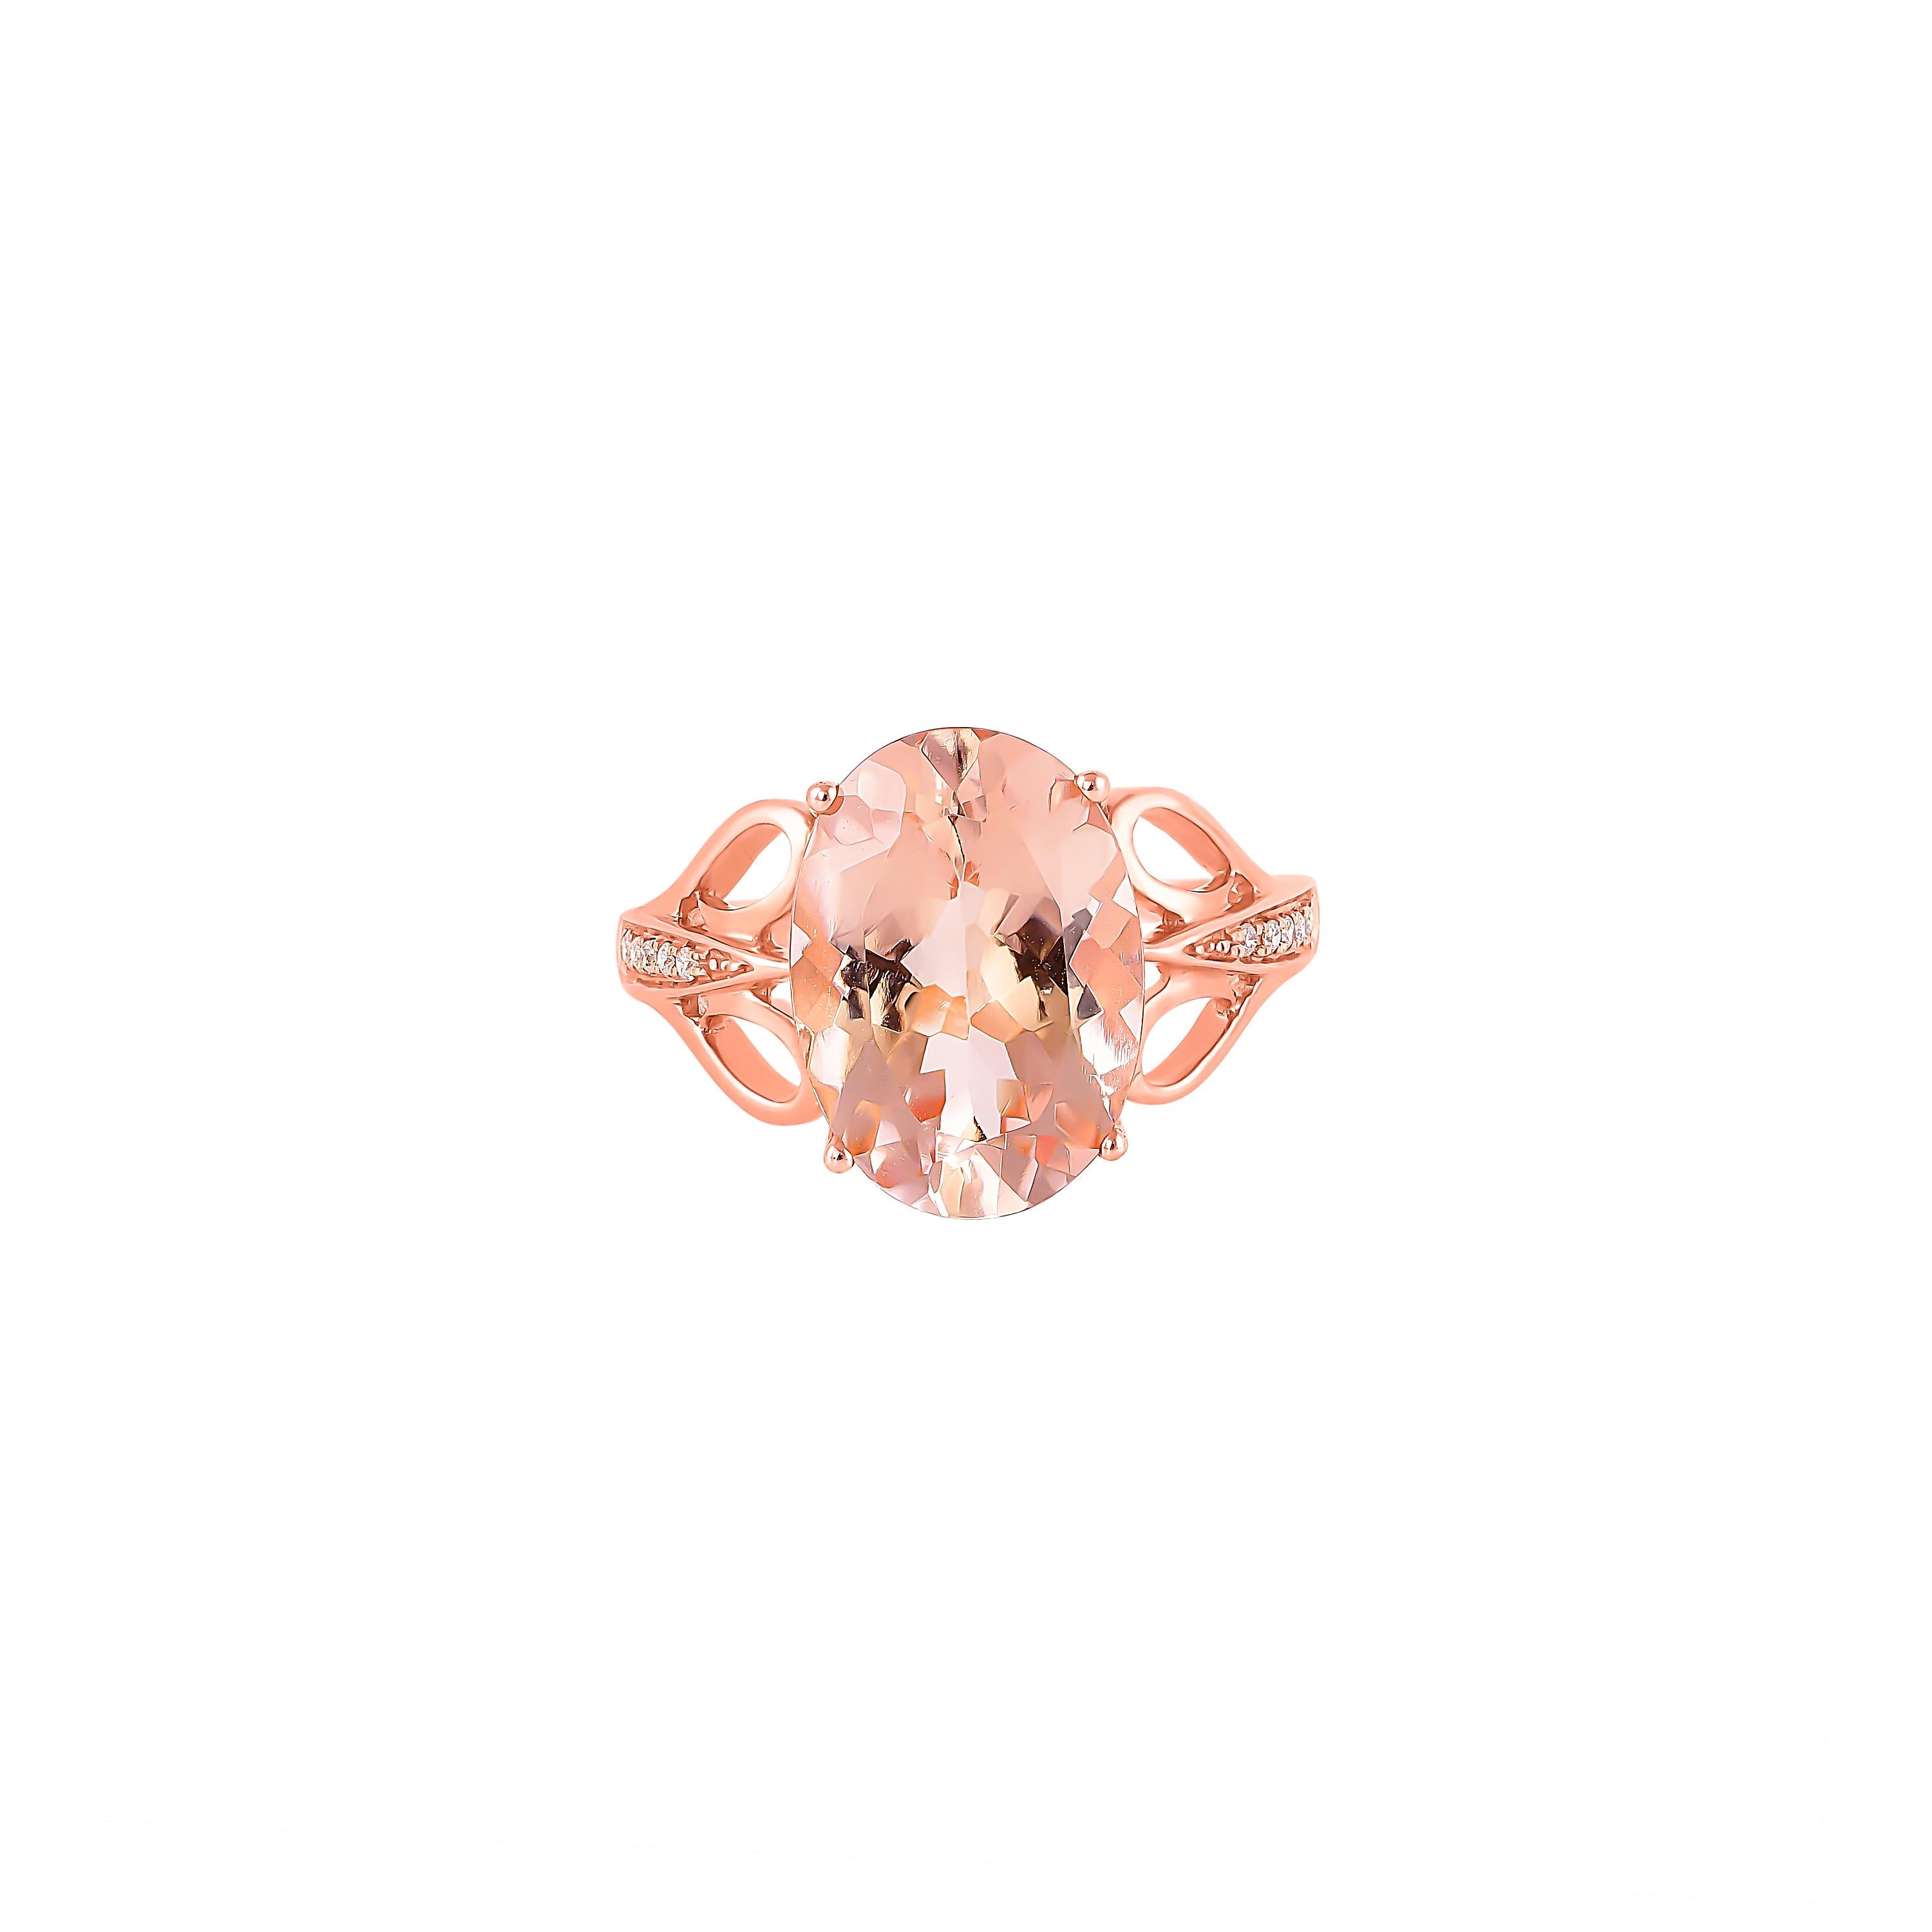 Cette collection présente un éventail de magnifiques morganites ! Accentuées par des diamants, ces bagues sont fabriquées en or rose et présentent un look classique mais élégant. 

Bague classique en morganite en or rose 18 carats avec diamant.